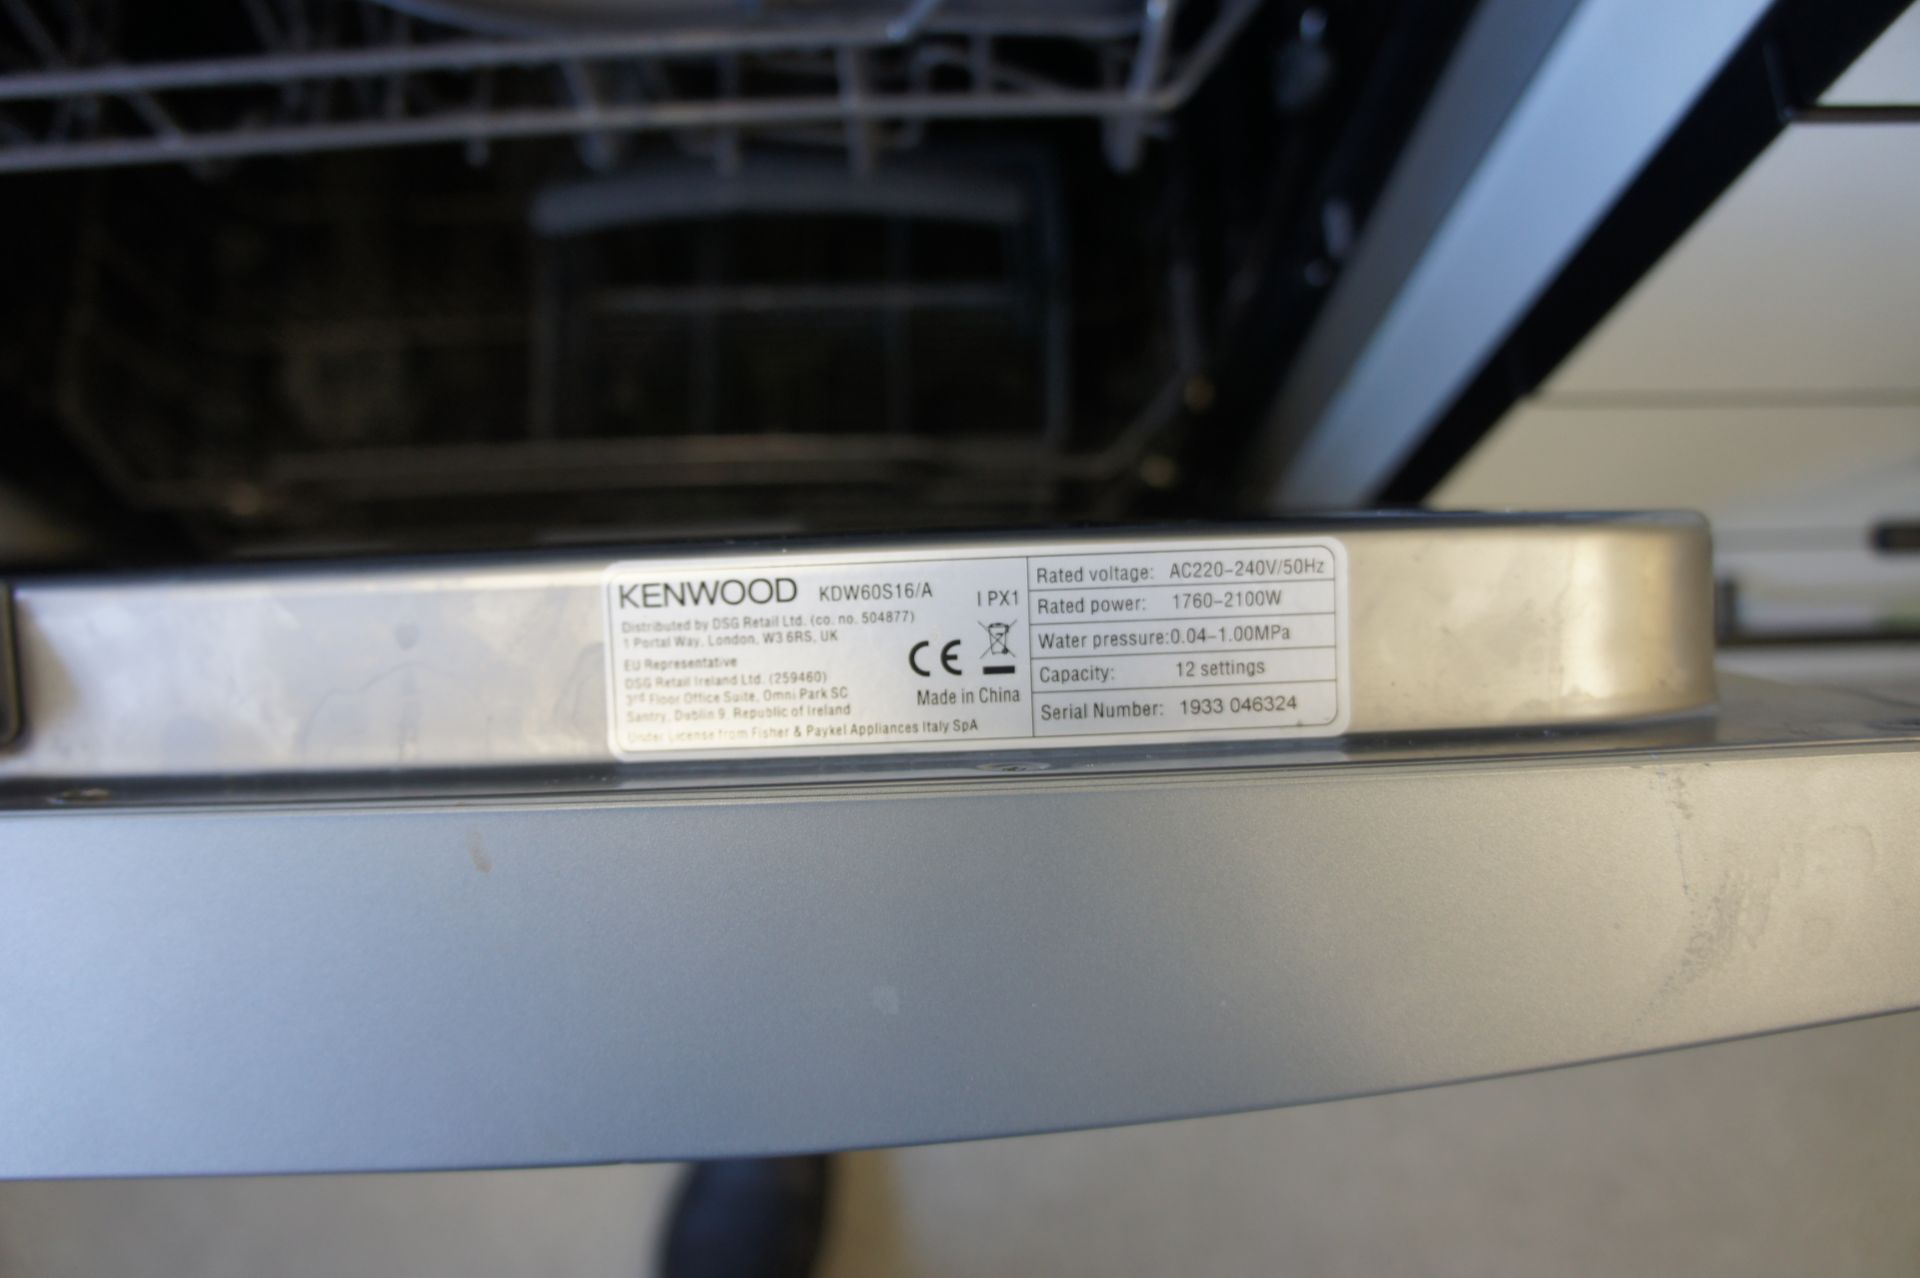 Kenwood KDW60S16A dishwasher - Image 3 of 4